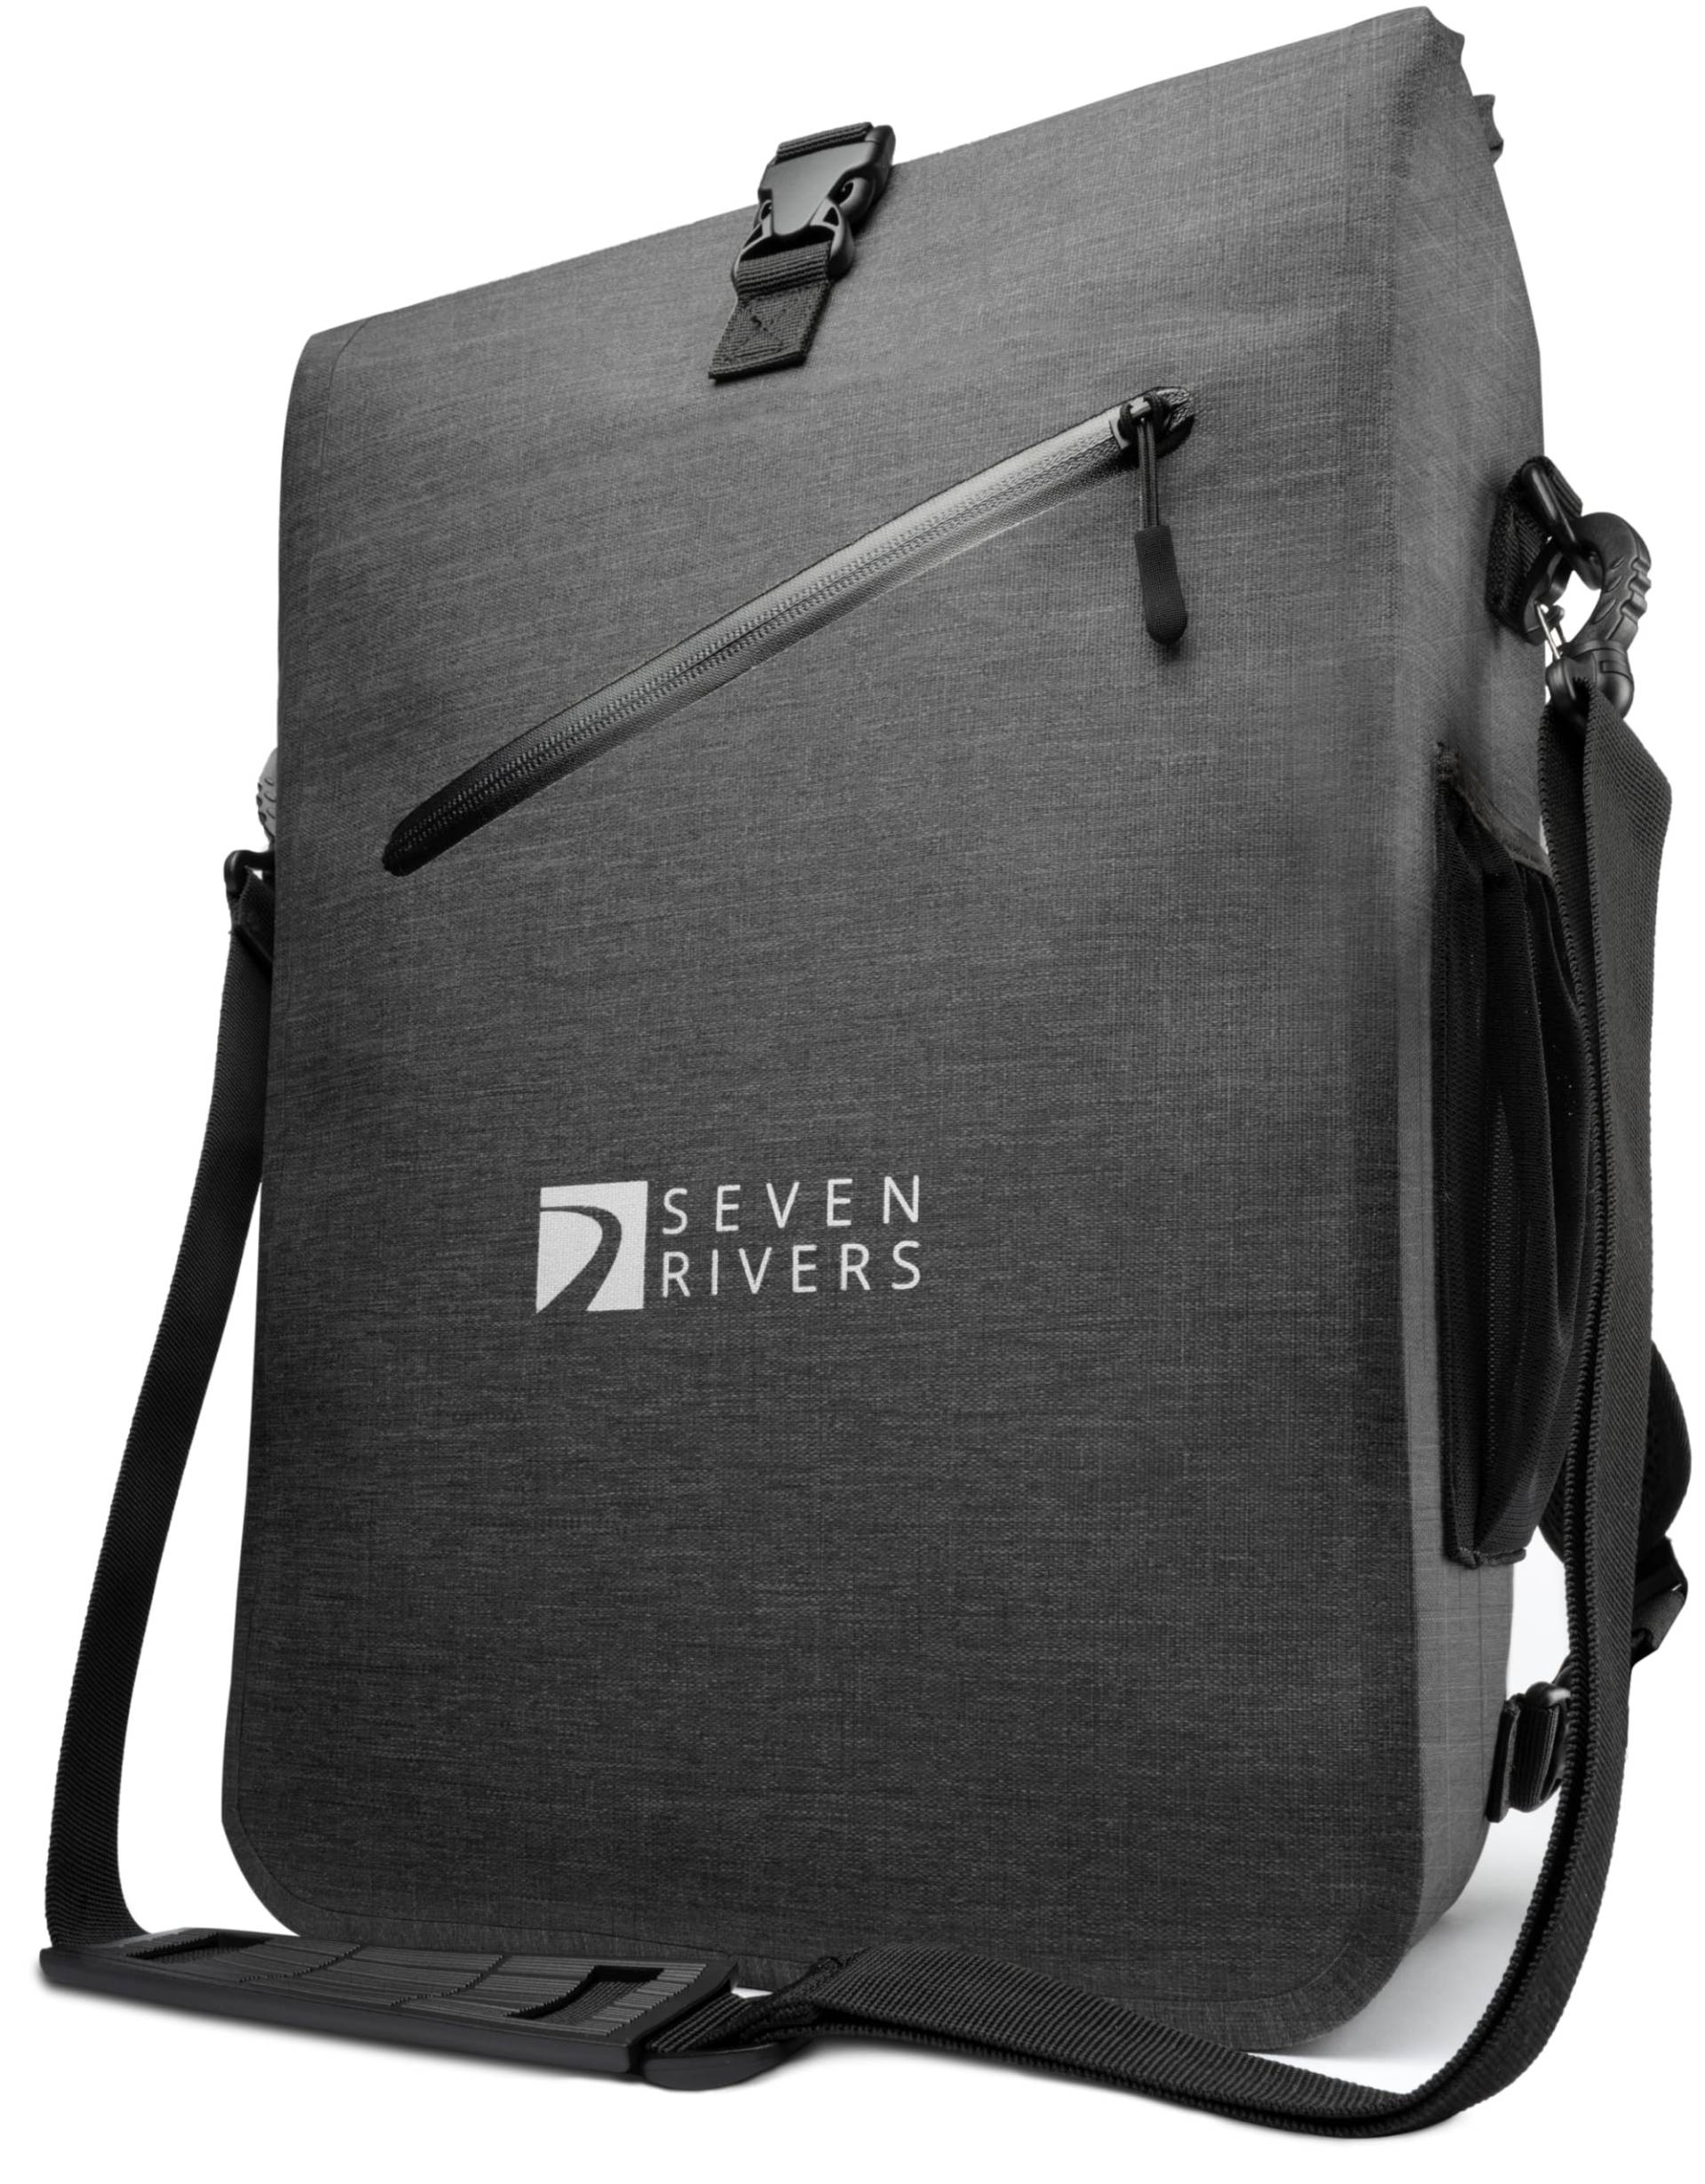 SEVENRIVERS 3 in 1 Fahrradtasche - Rucksack, Gepäckträgertasche & Umhängetasche in einem - Wasserdicht & PVC frei - inkl. Laptop-Tasche (24L) (Anthrazit) von SEVENRIVERS